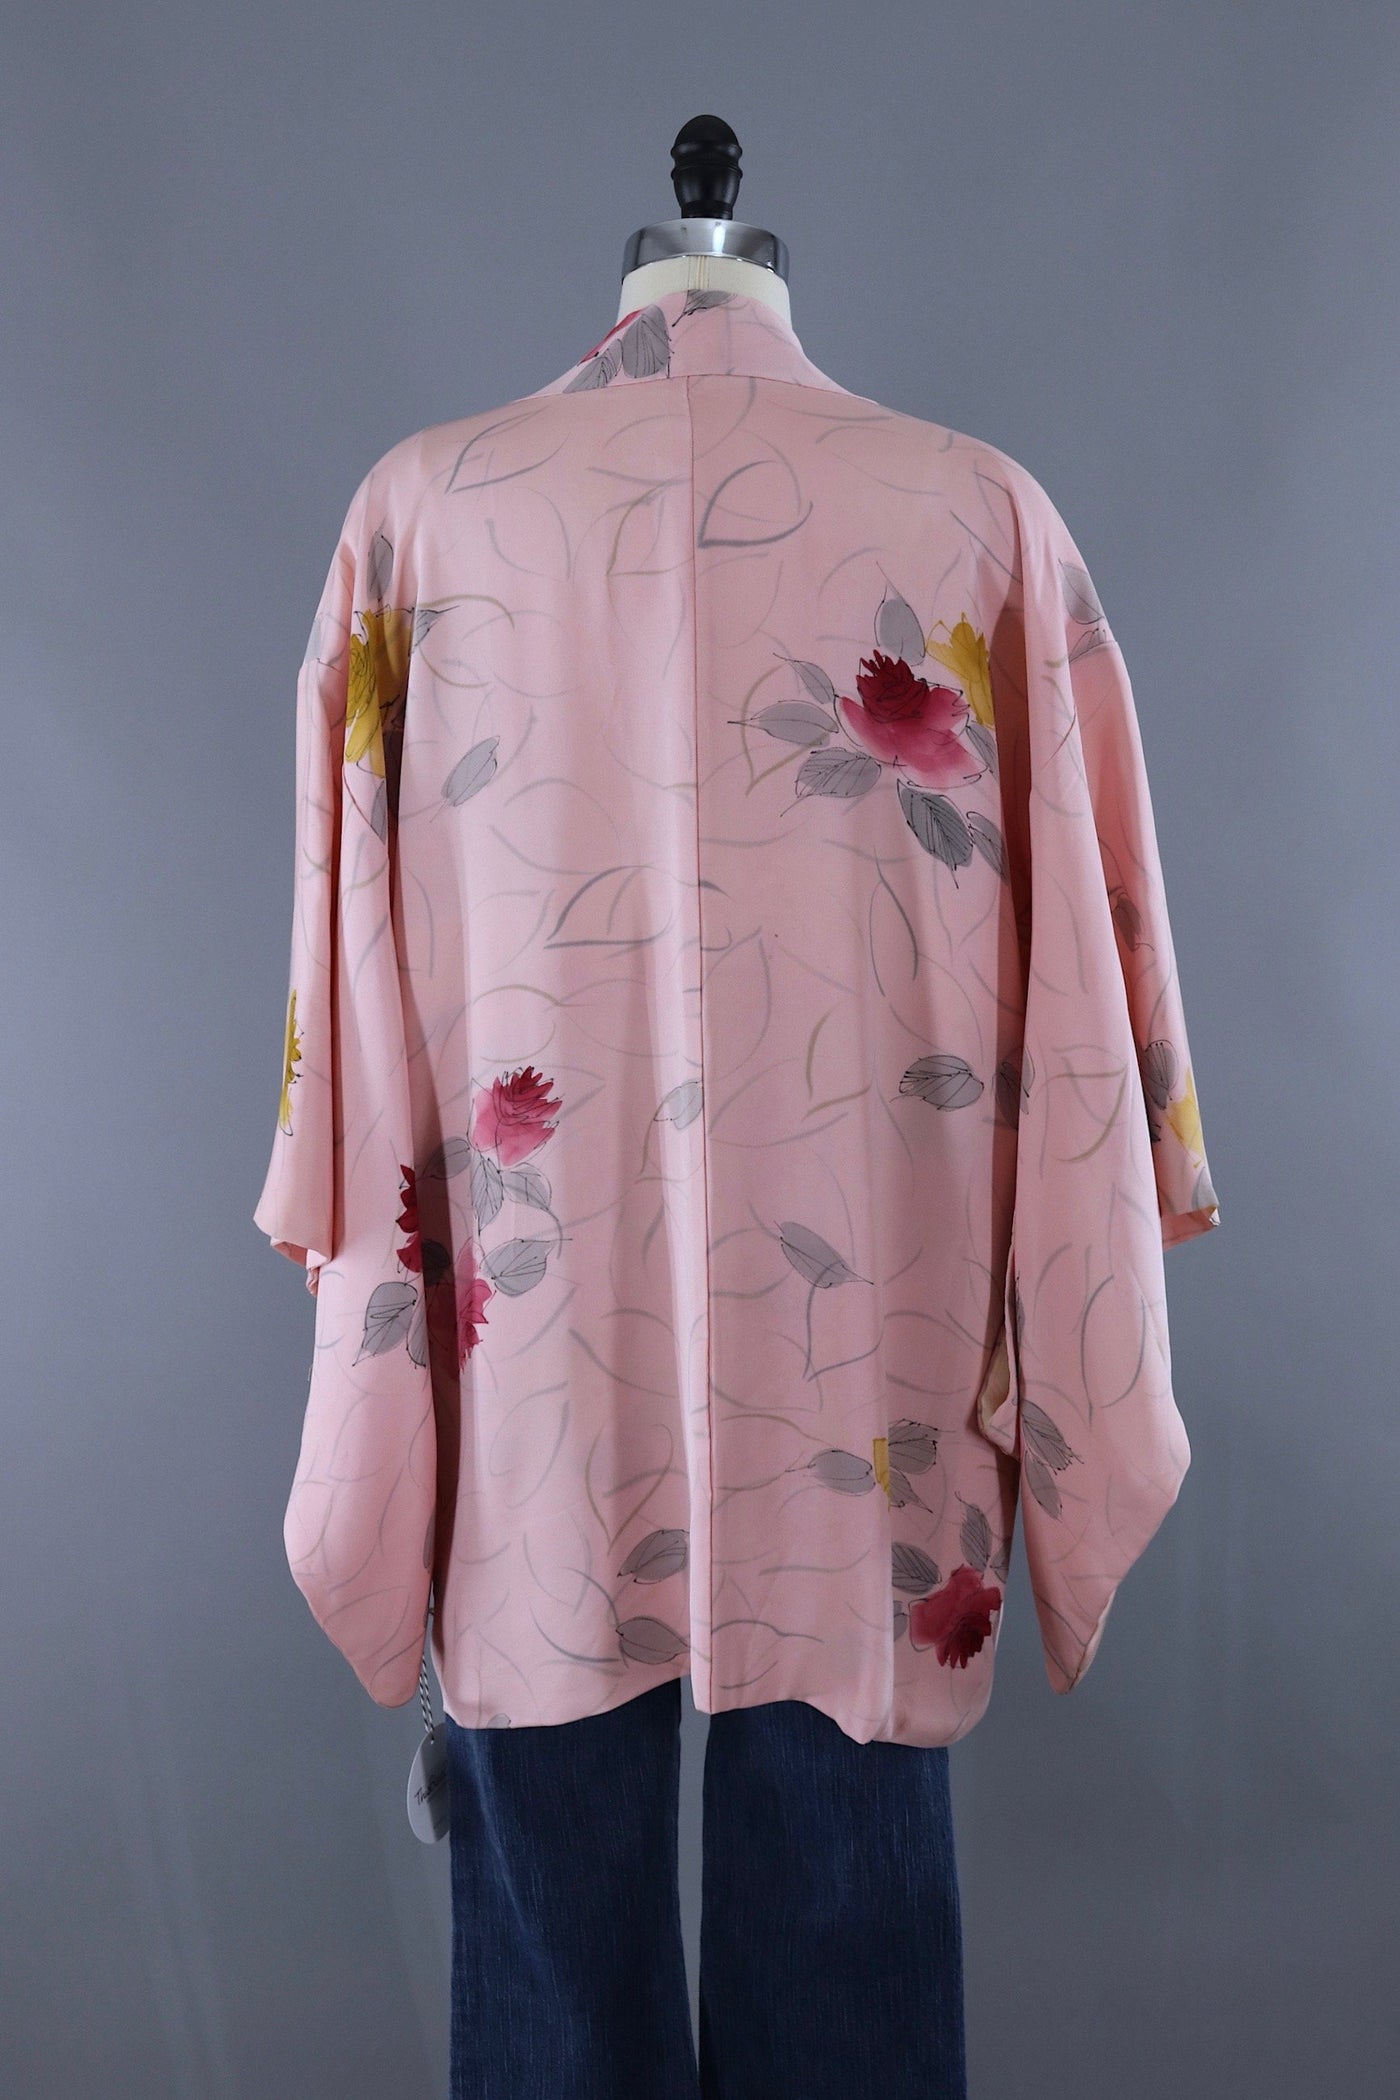 Vintage Silk Kimono Cardigan Jaket / Pastel Pink Rose Floral Print ...